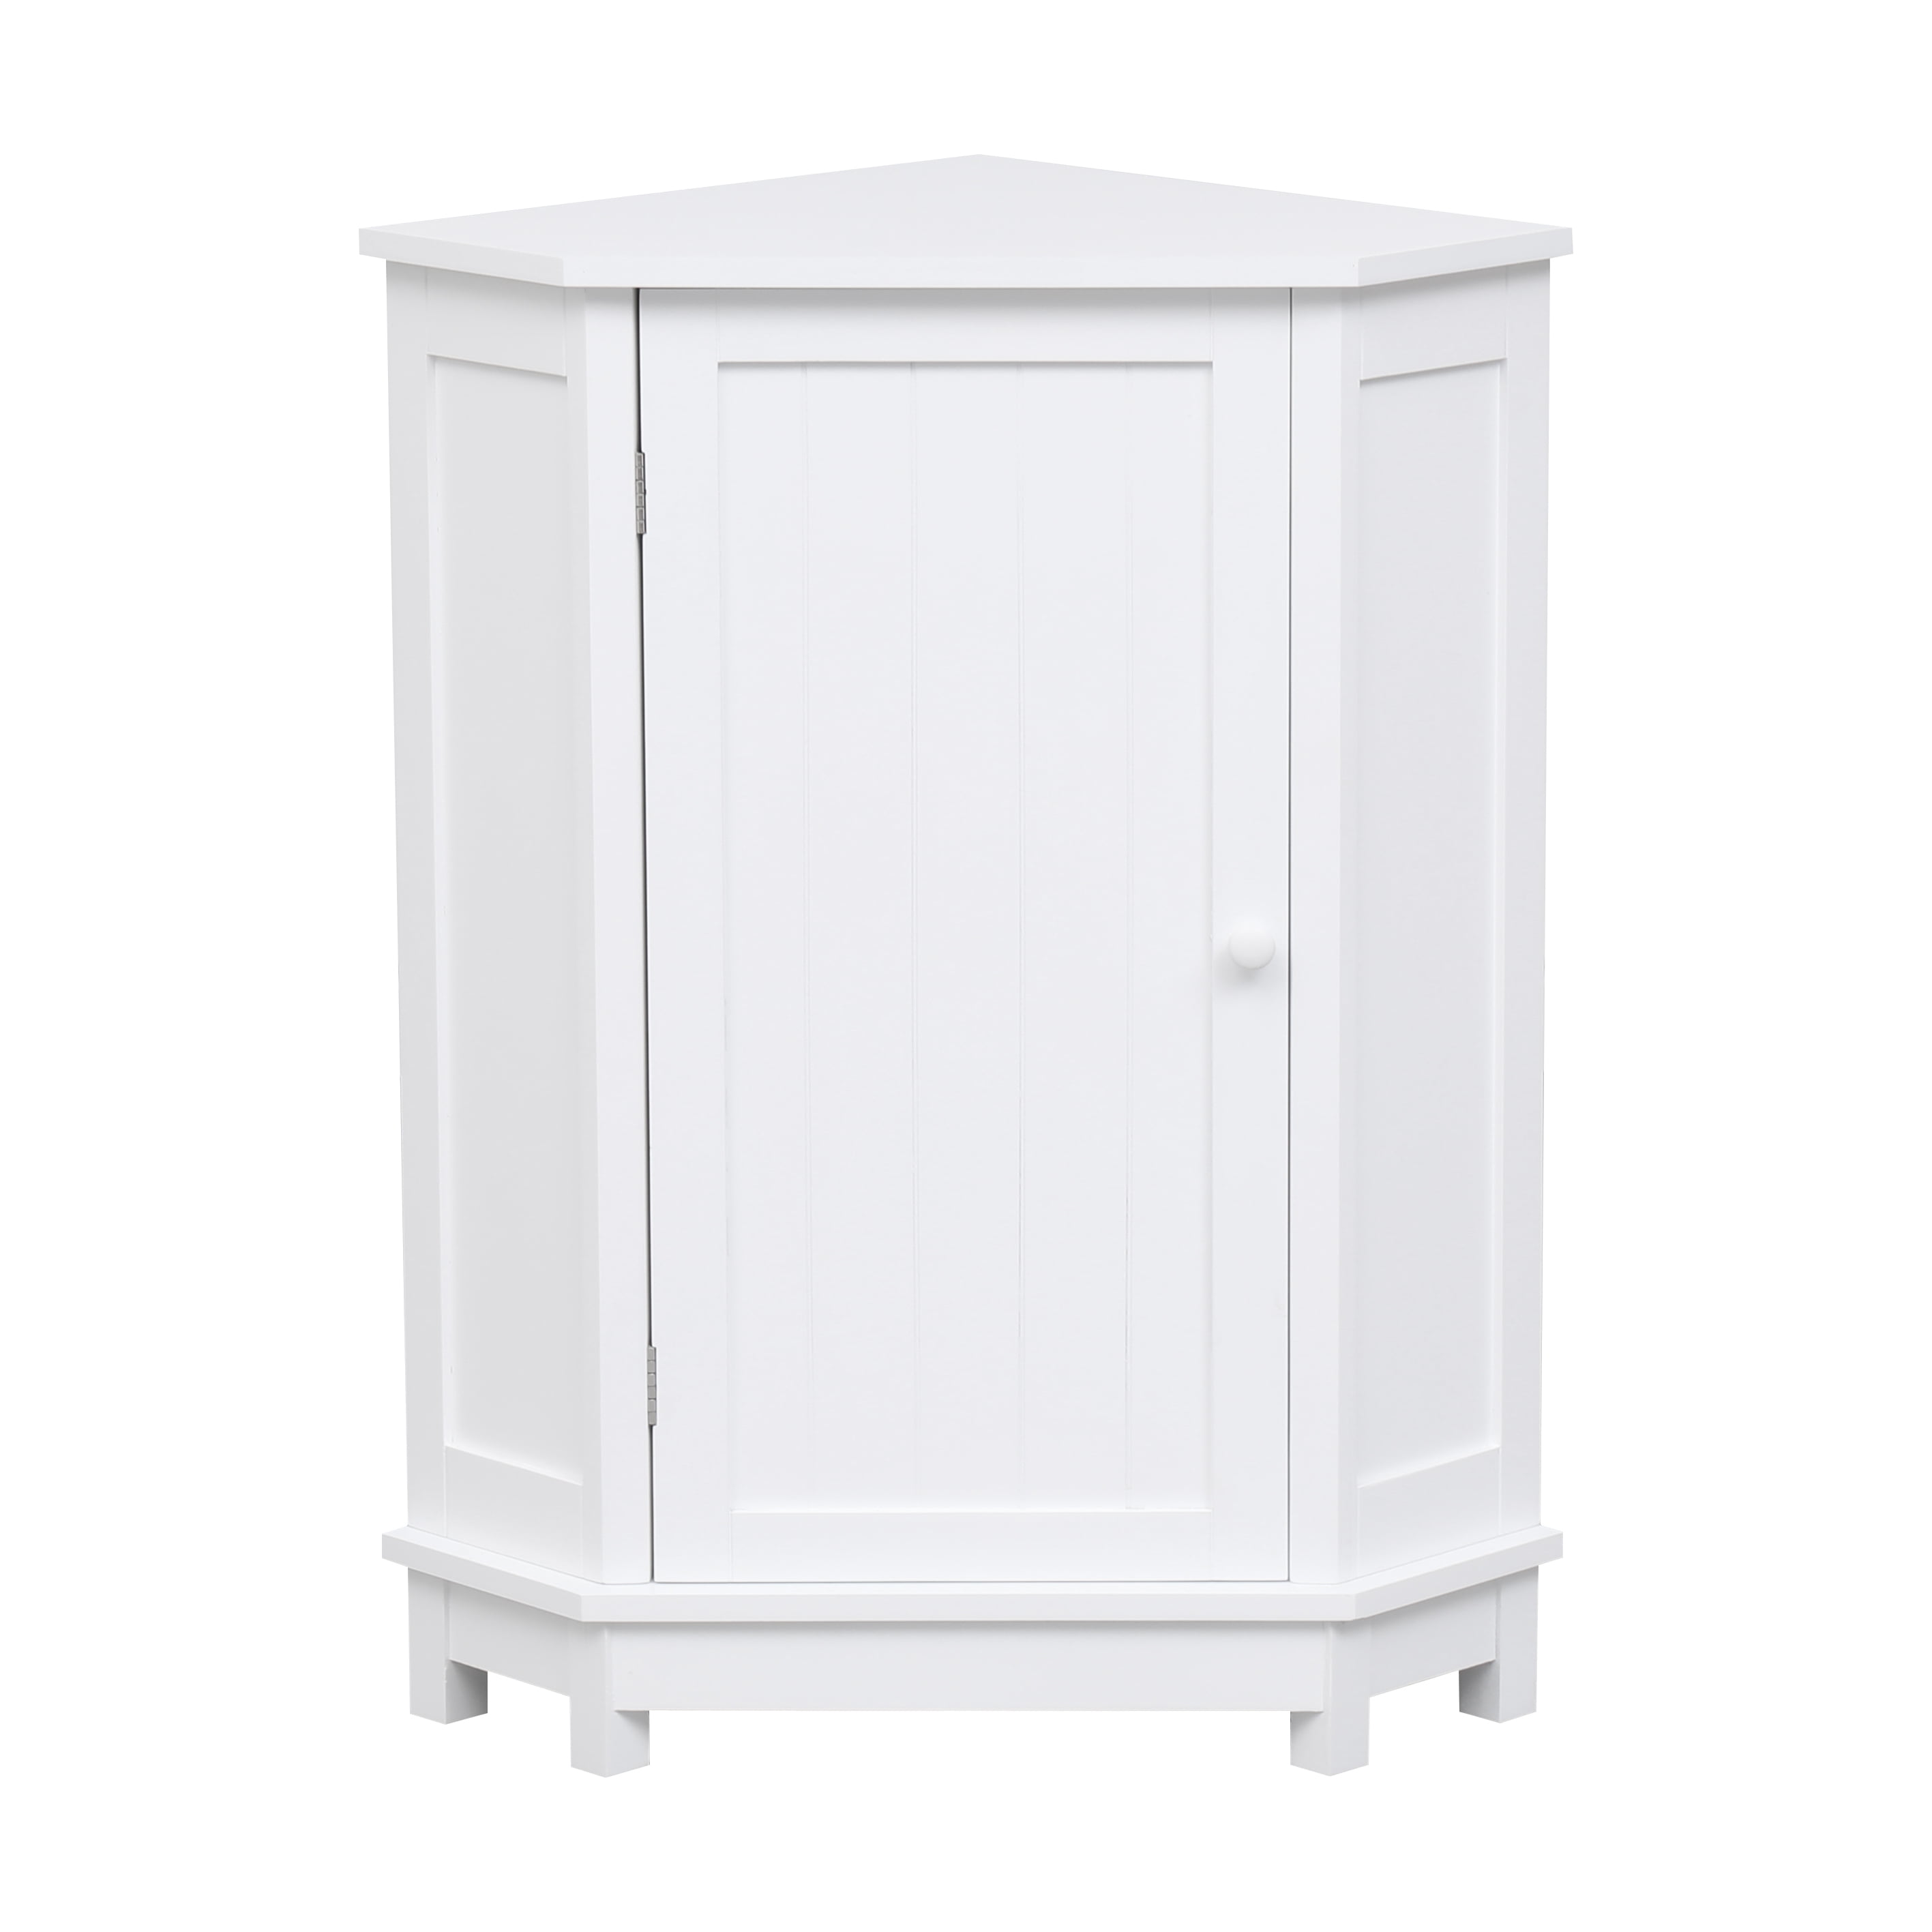 Adams 3 Tier Freestanding Corner Bathroom Storage Organizer, White Wood